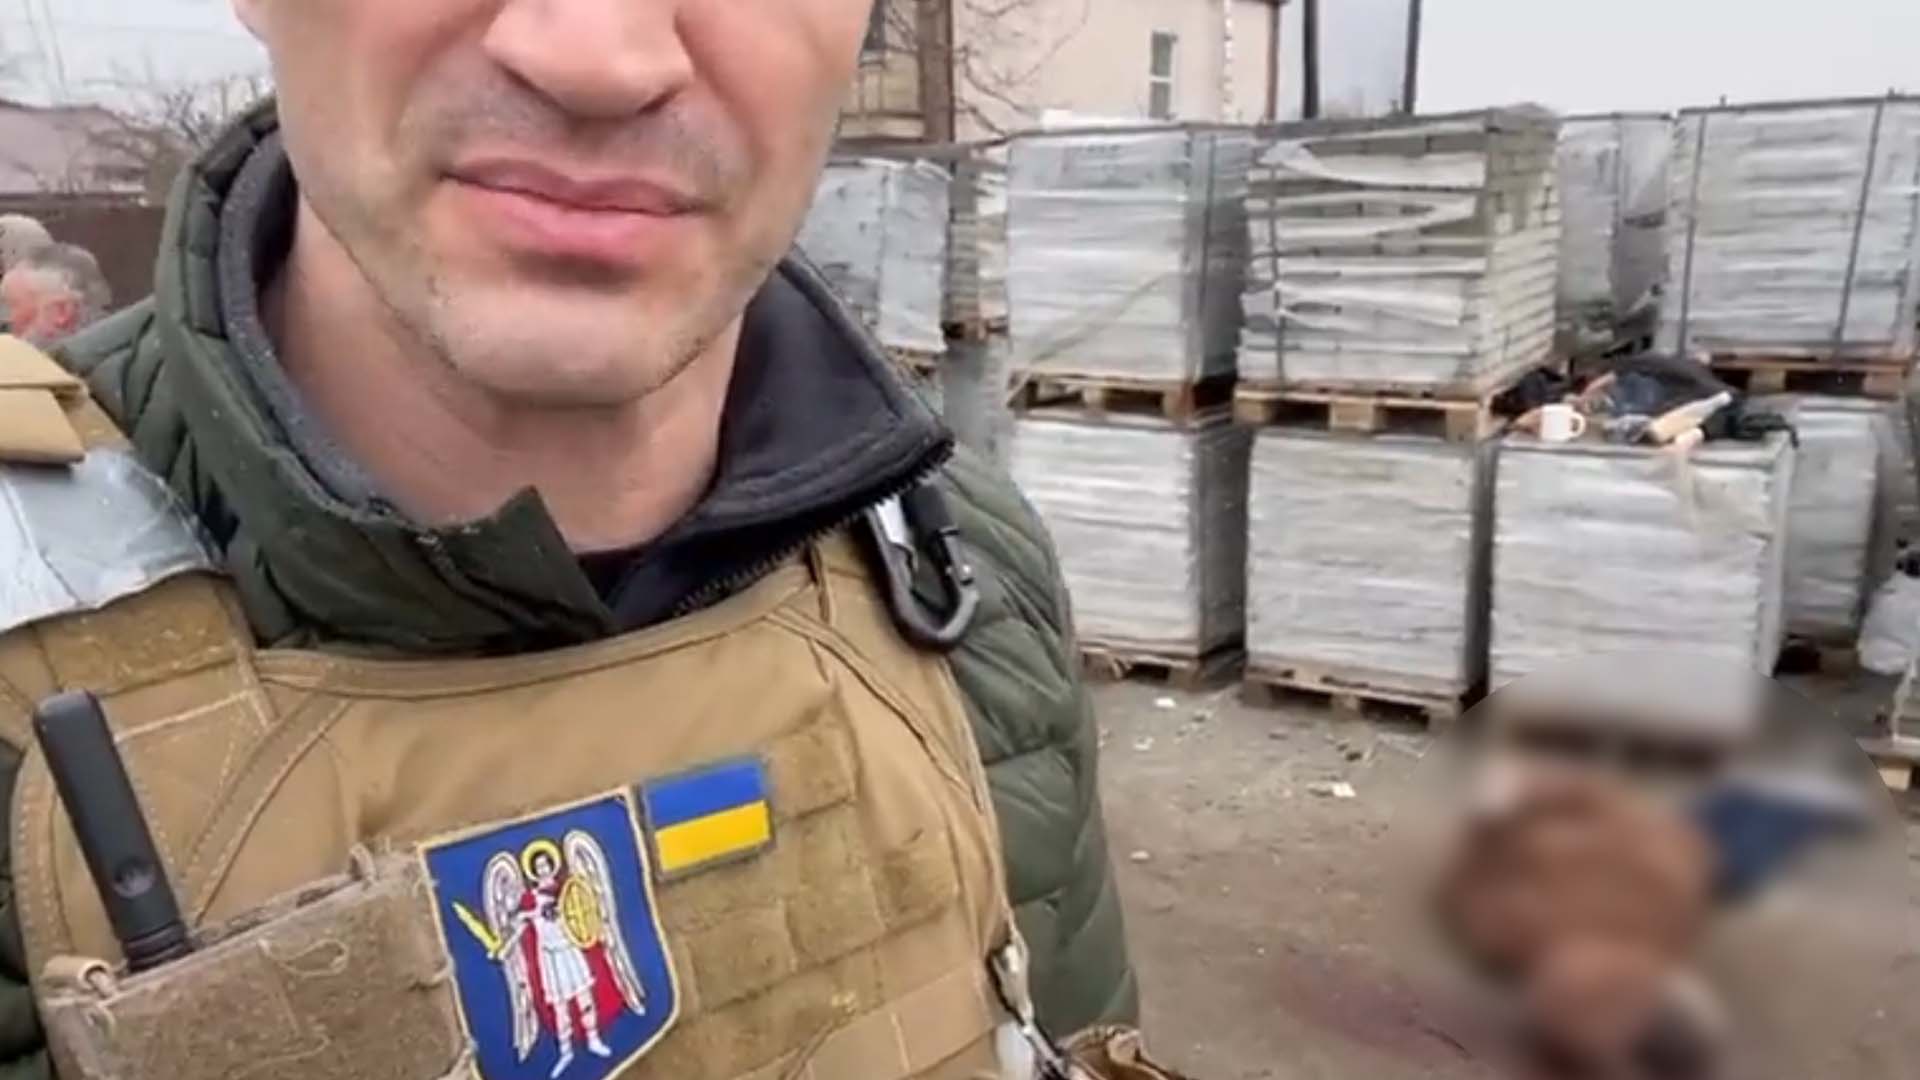 Wladimir Klitschko publie une vidéo troublante où l'ont voit des civils ukrainiens sans vie. «C'est ce que fait le régime Poutine», dit-il.